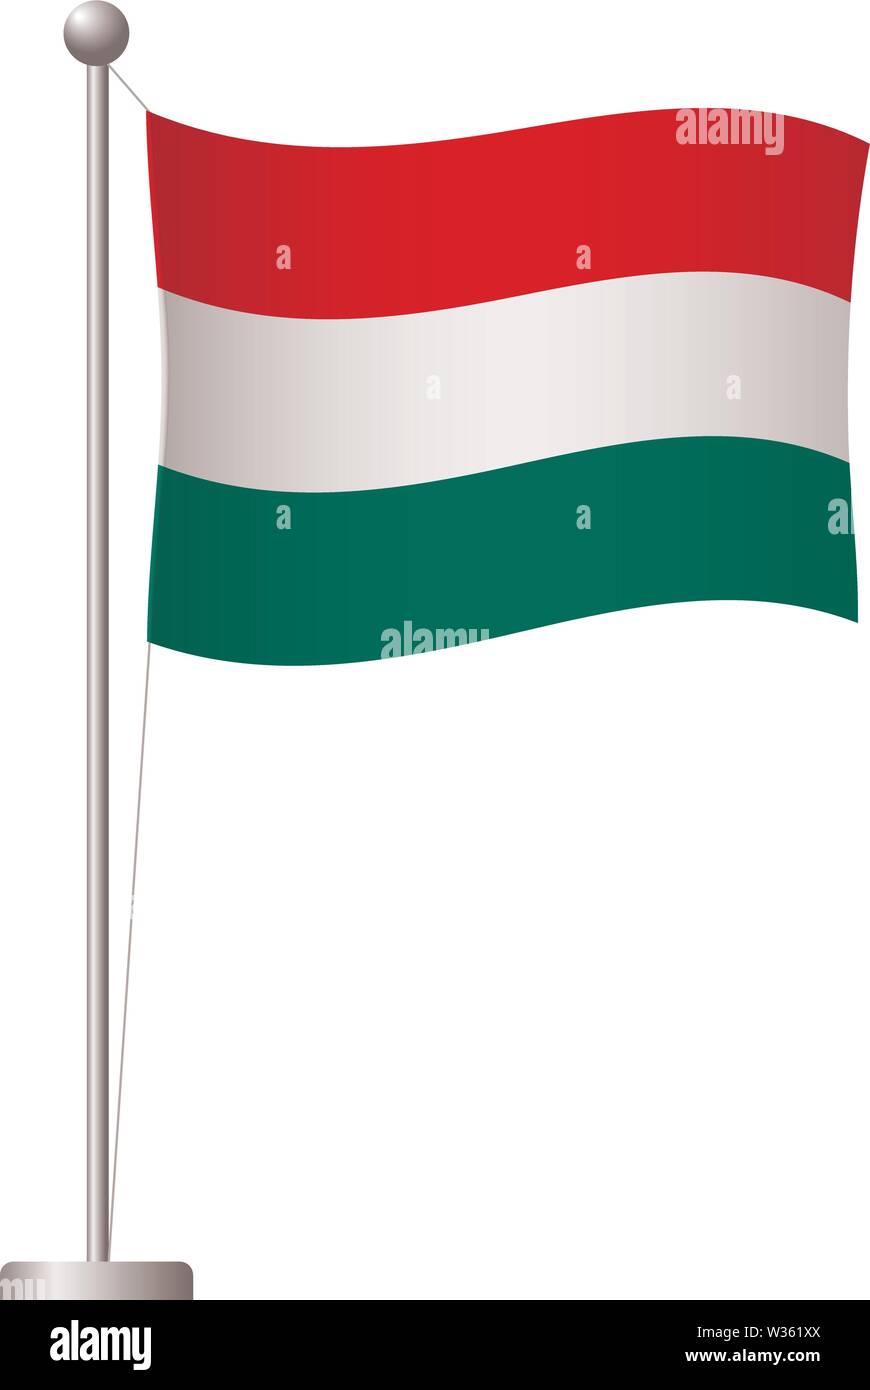 Hungary flag on pole. Metal flagpole. National flag of Hungary vector  illustration Stock Vector Image & Art - Alamy